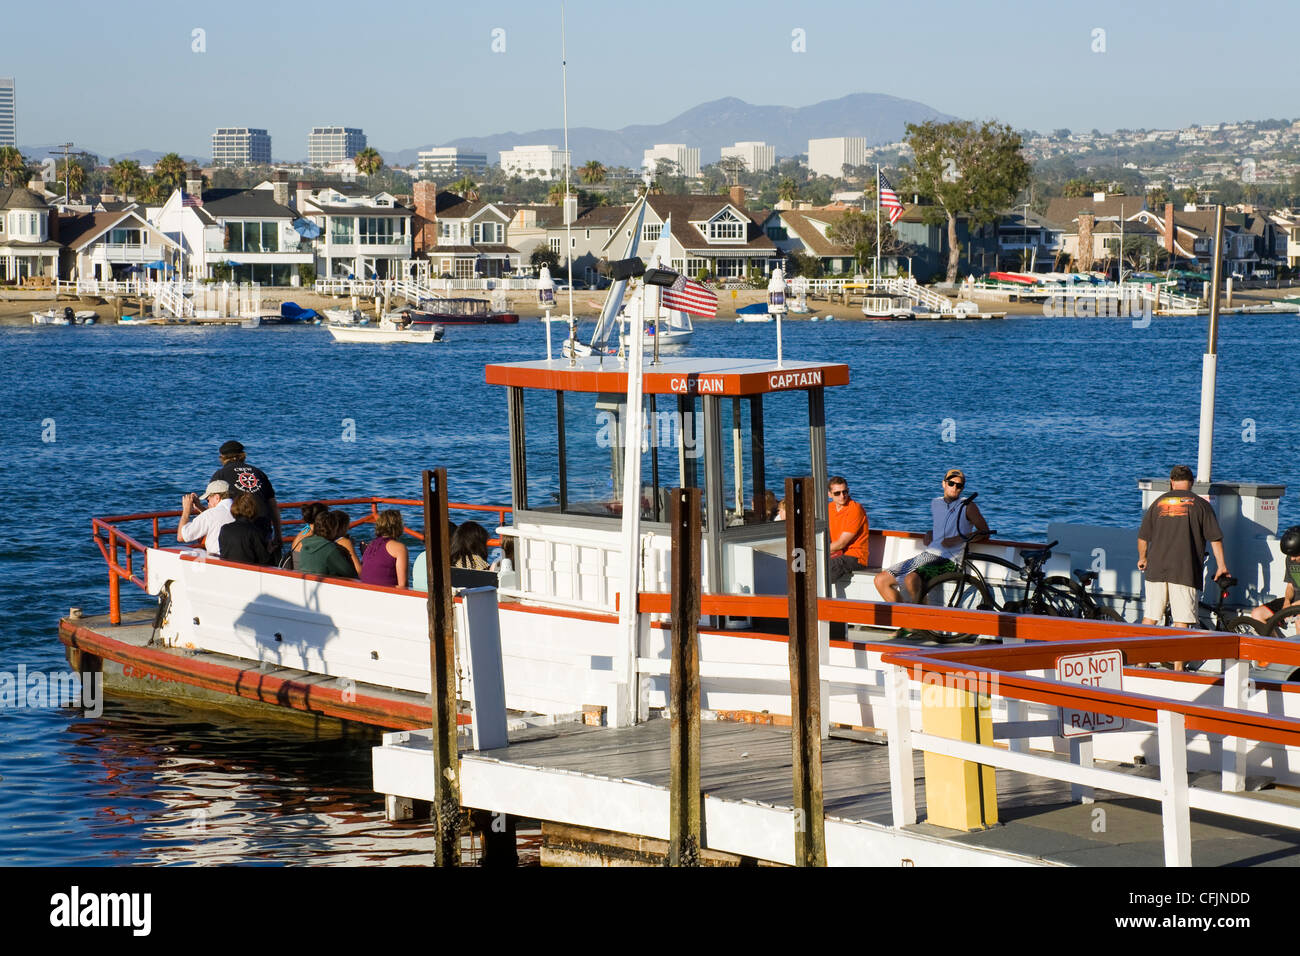 Balboa Island Ferry, Newport Beach, Orange County, Californie, États-Unis d'Amérique, Amérique du Nord Banque D'Images